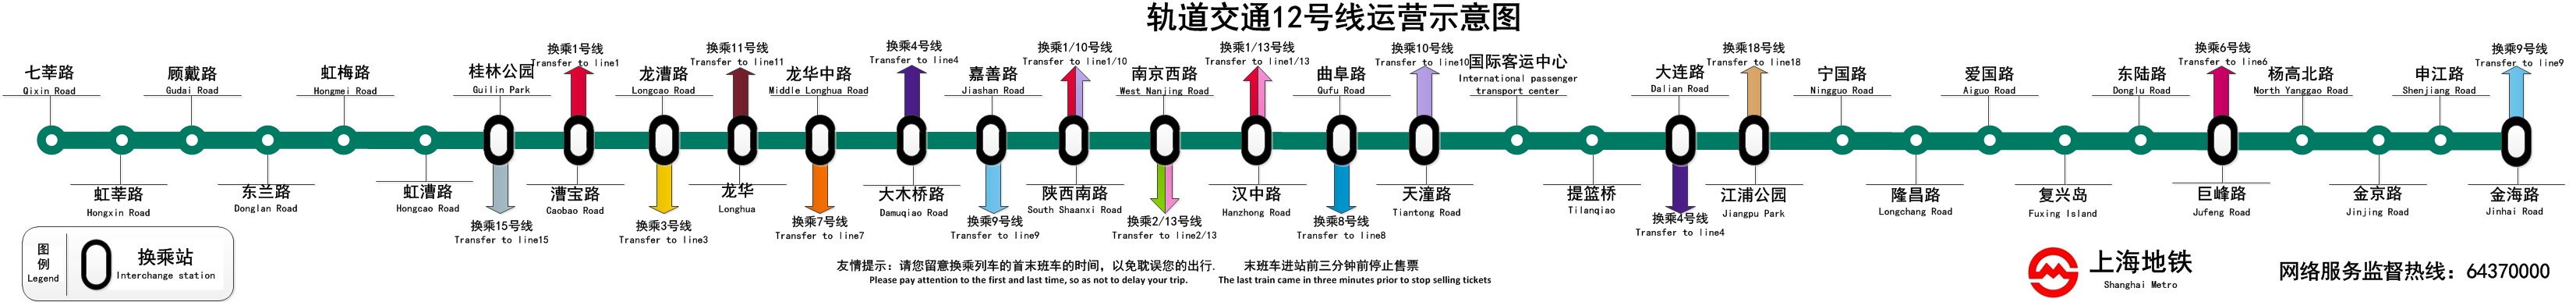 上海軌道交通12號線運營示意圖